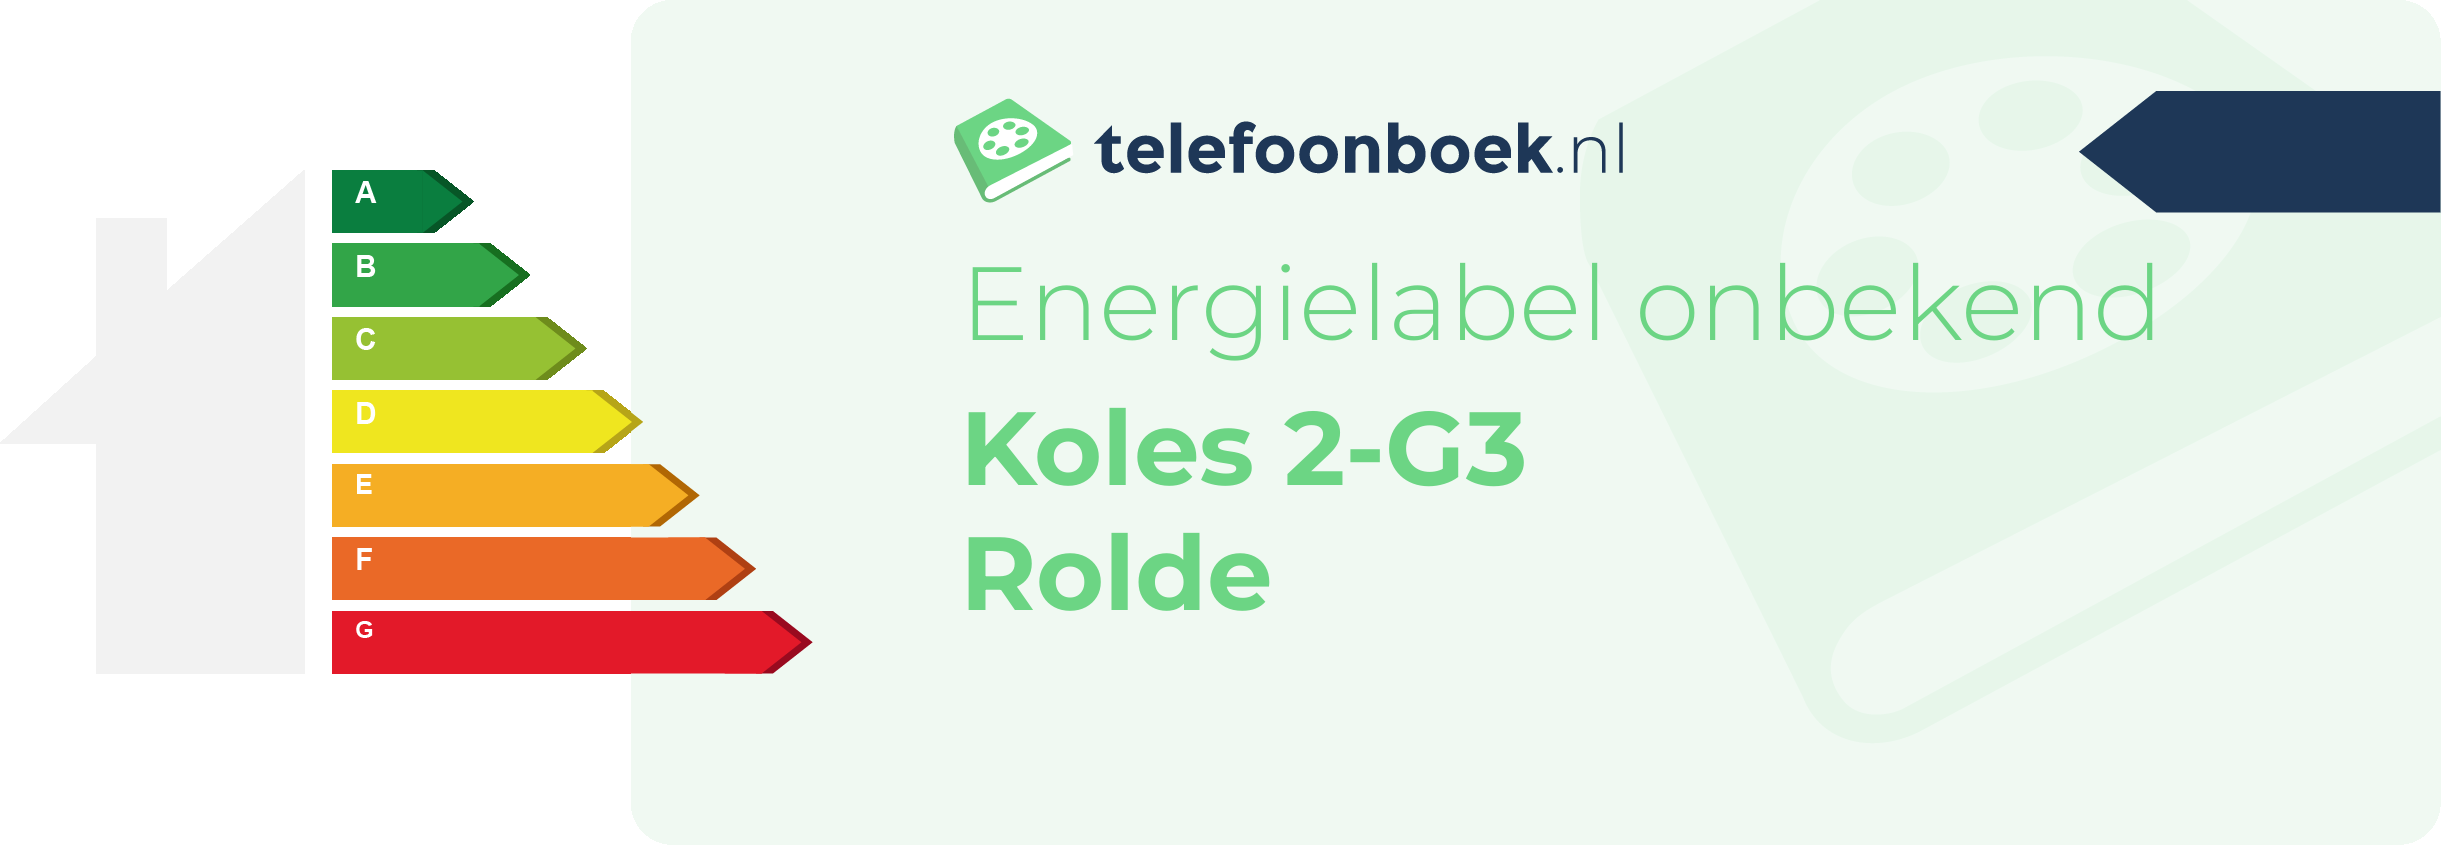 Energielabel Koles 2-G3 Rolde